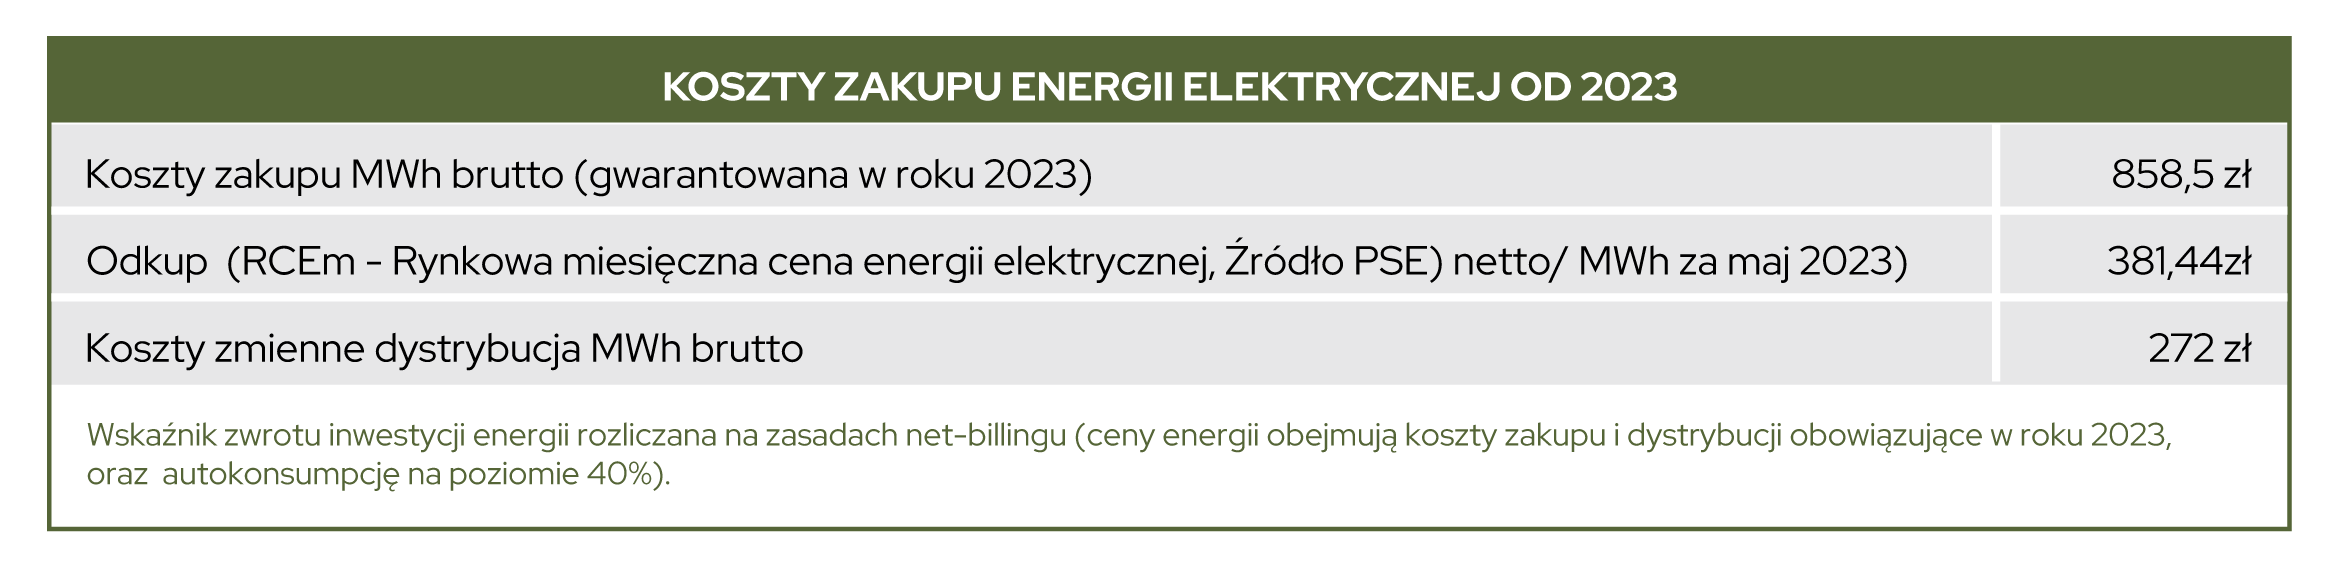 dvge - koszt energii elektrycznej czerwiec 2023